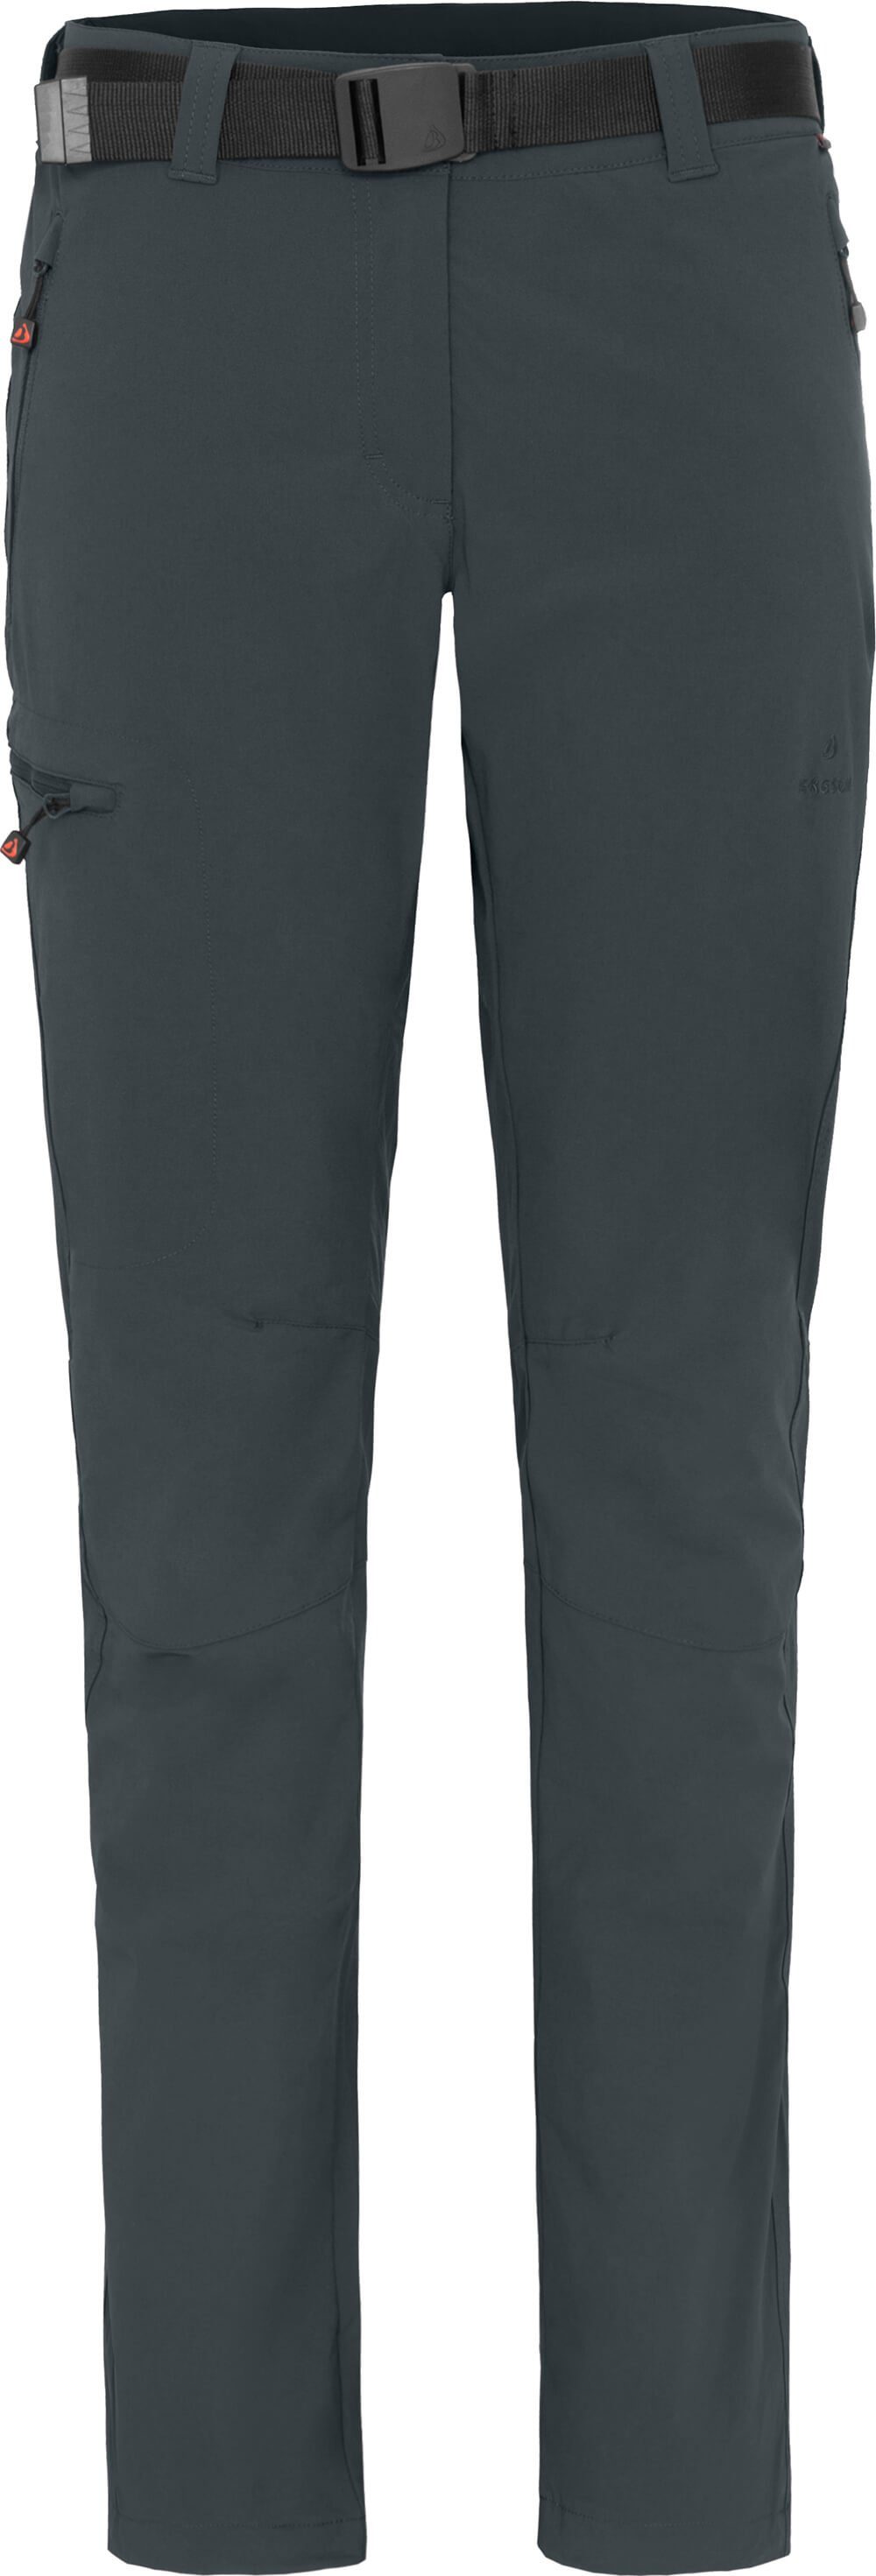 Bergson Outdoorhose TERRA (slim) grau elastisch, Damen Kurzgrößen, Winter-Wanderhose, gefüttert, warm dunkel